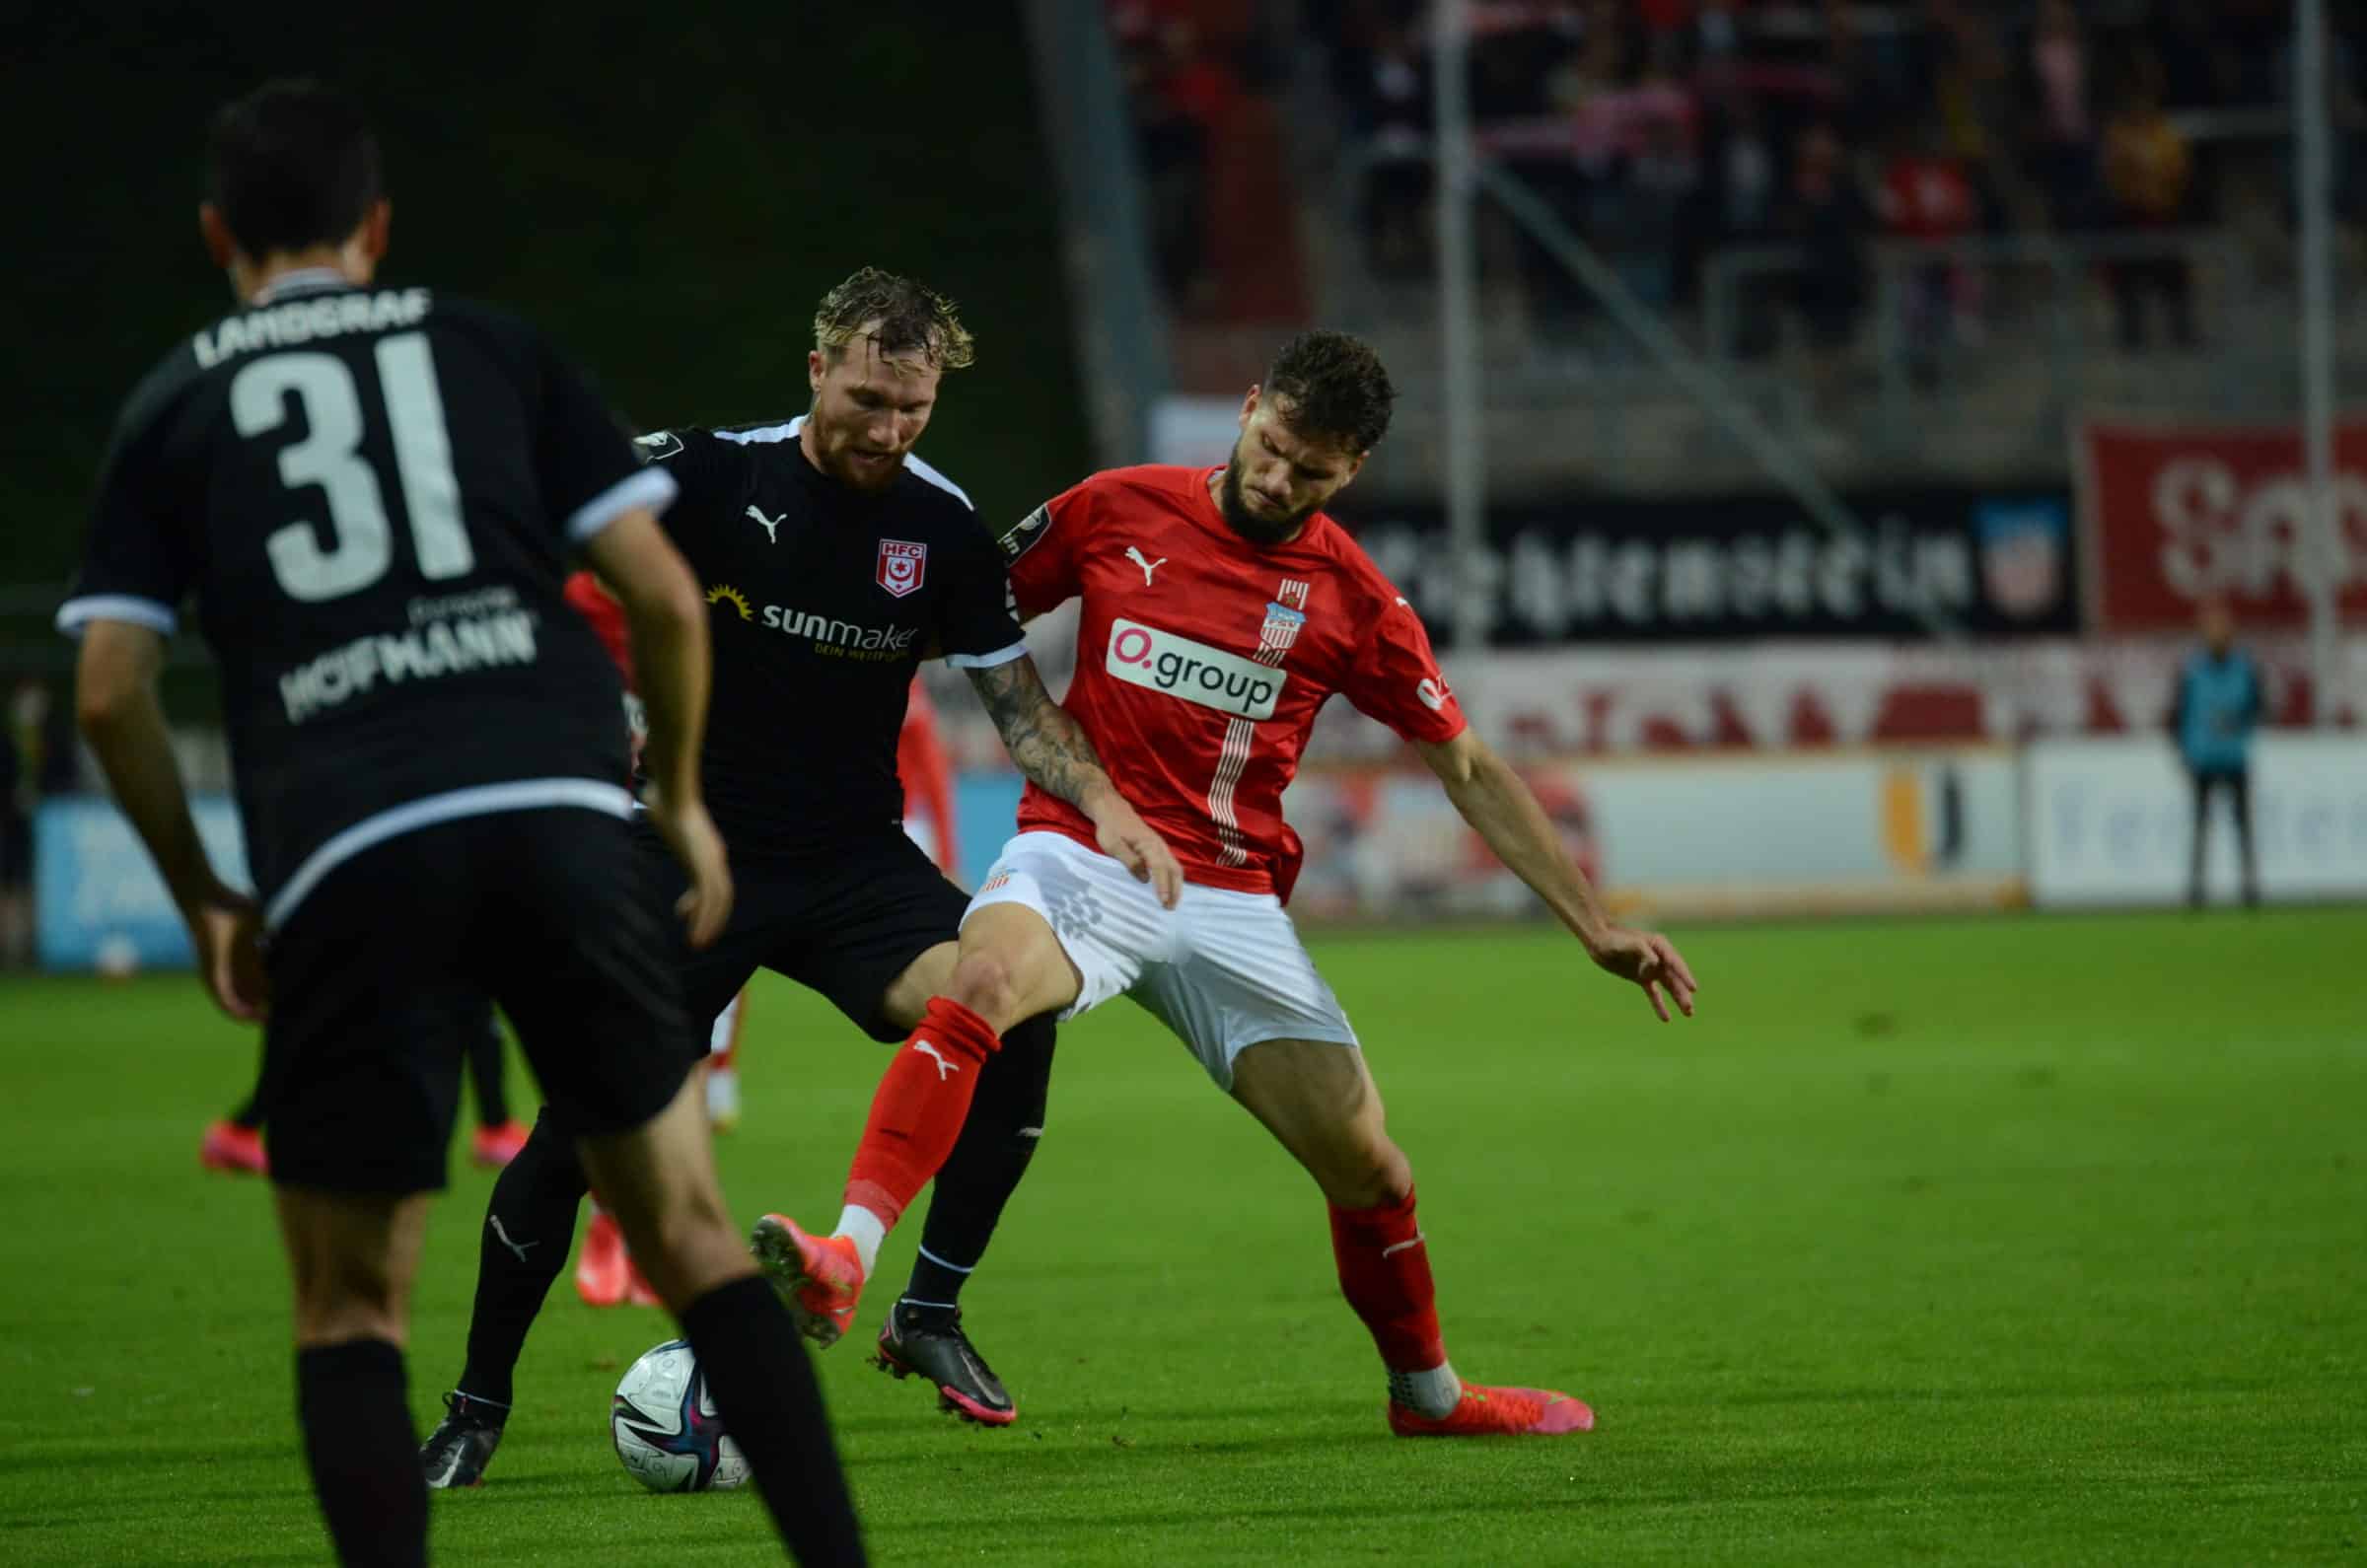 FSV Zwickau – Hallescher FC 2:2 (1:0) [7. Spieltag]